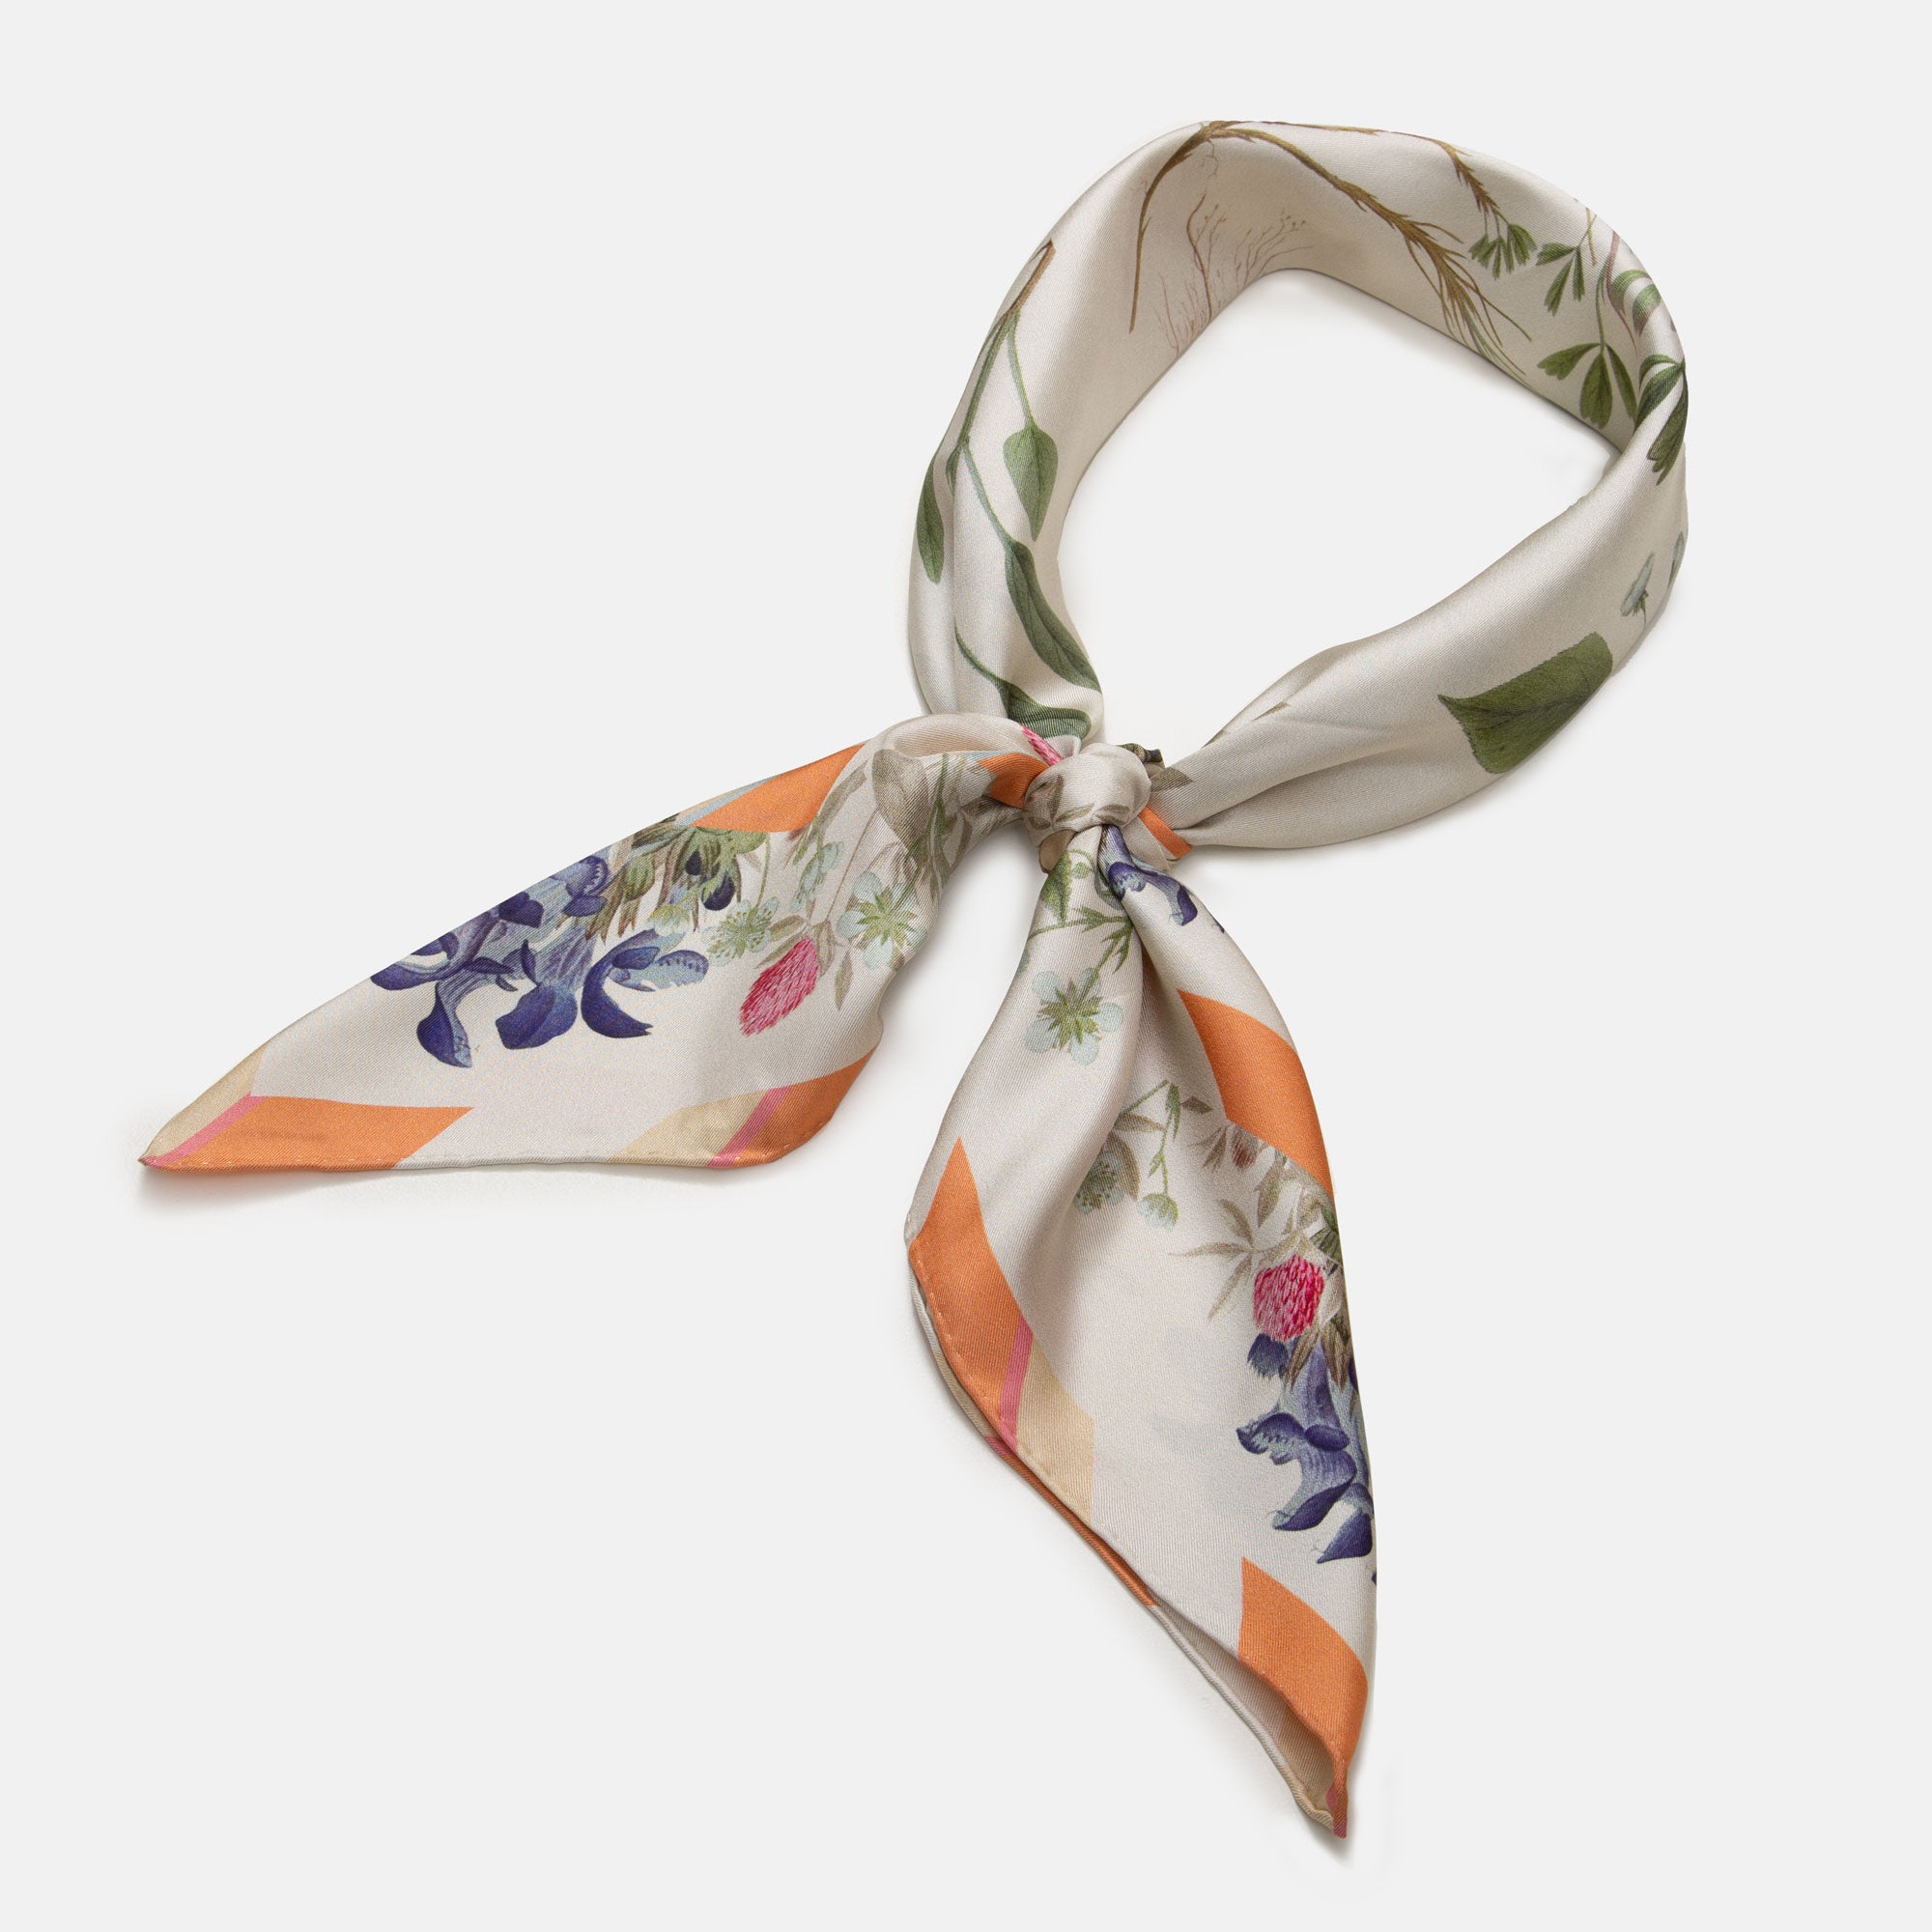 Flowering Spring Garden silk scarf